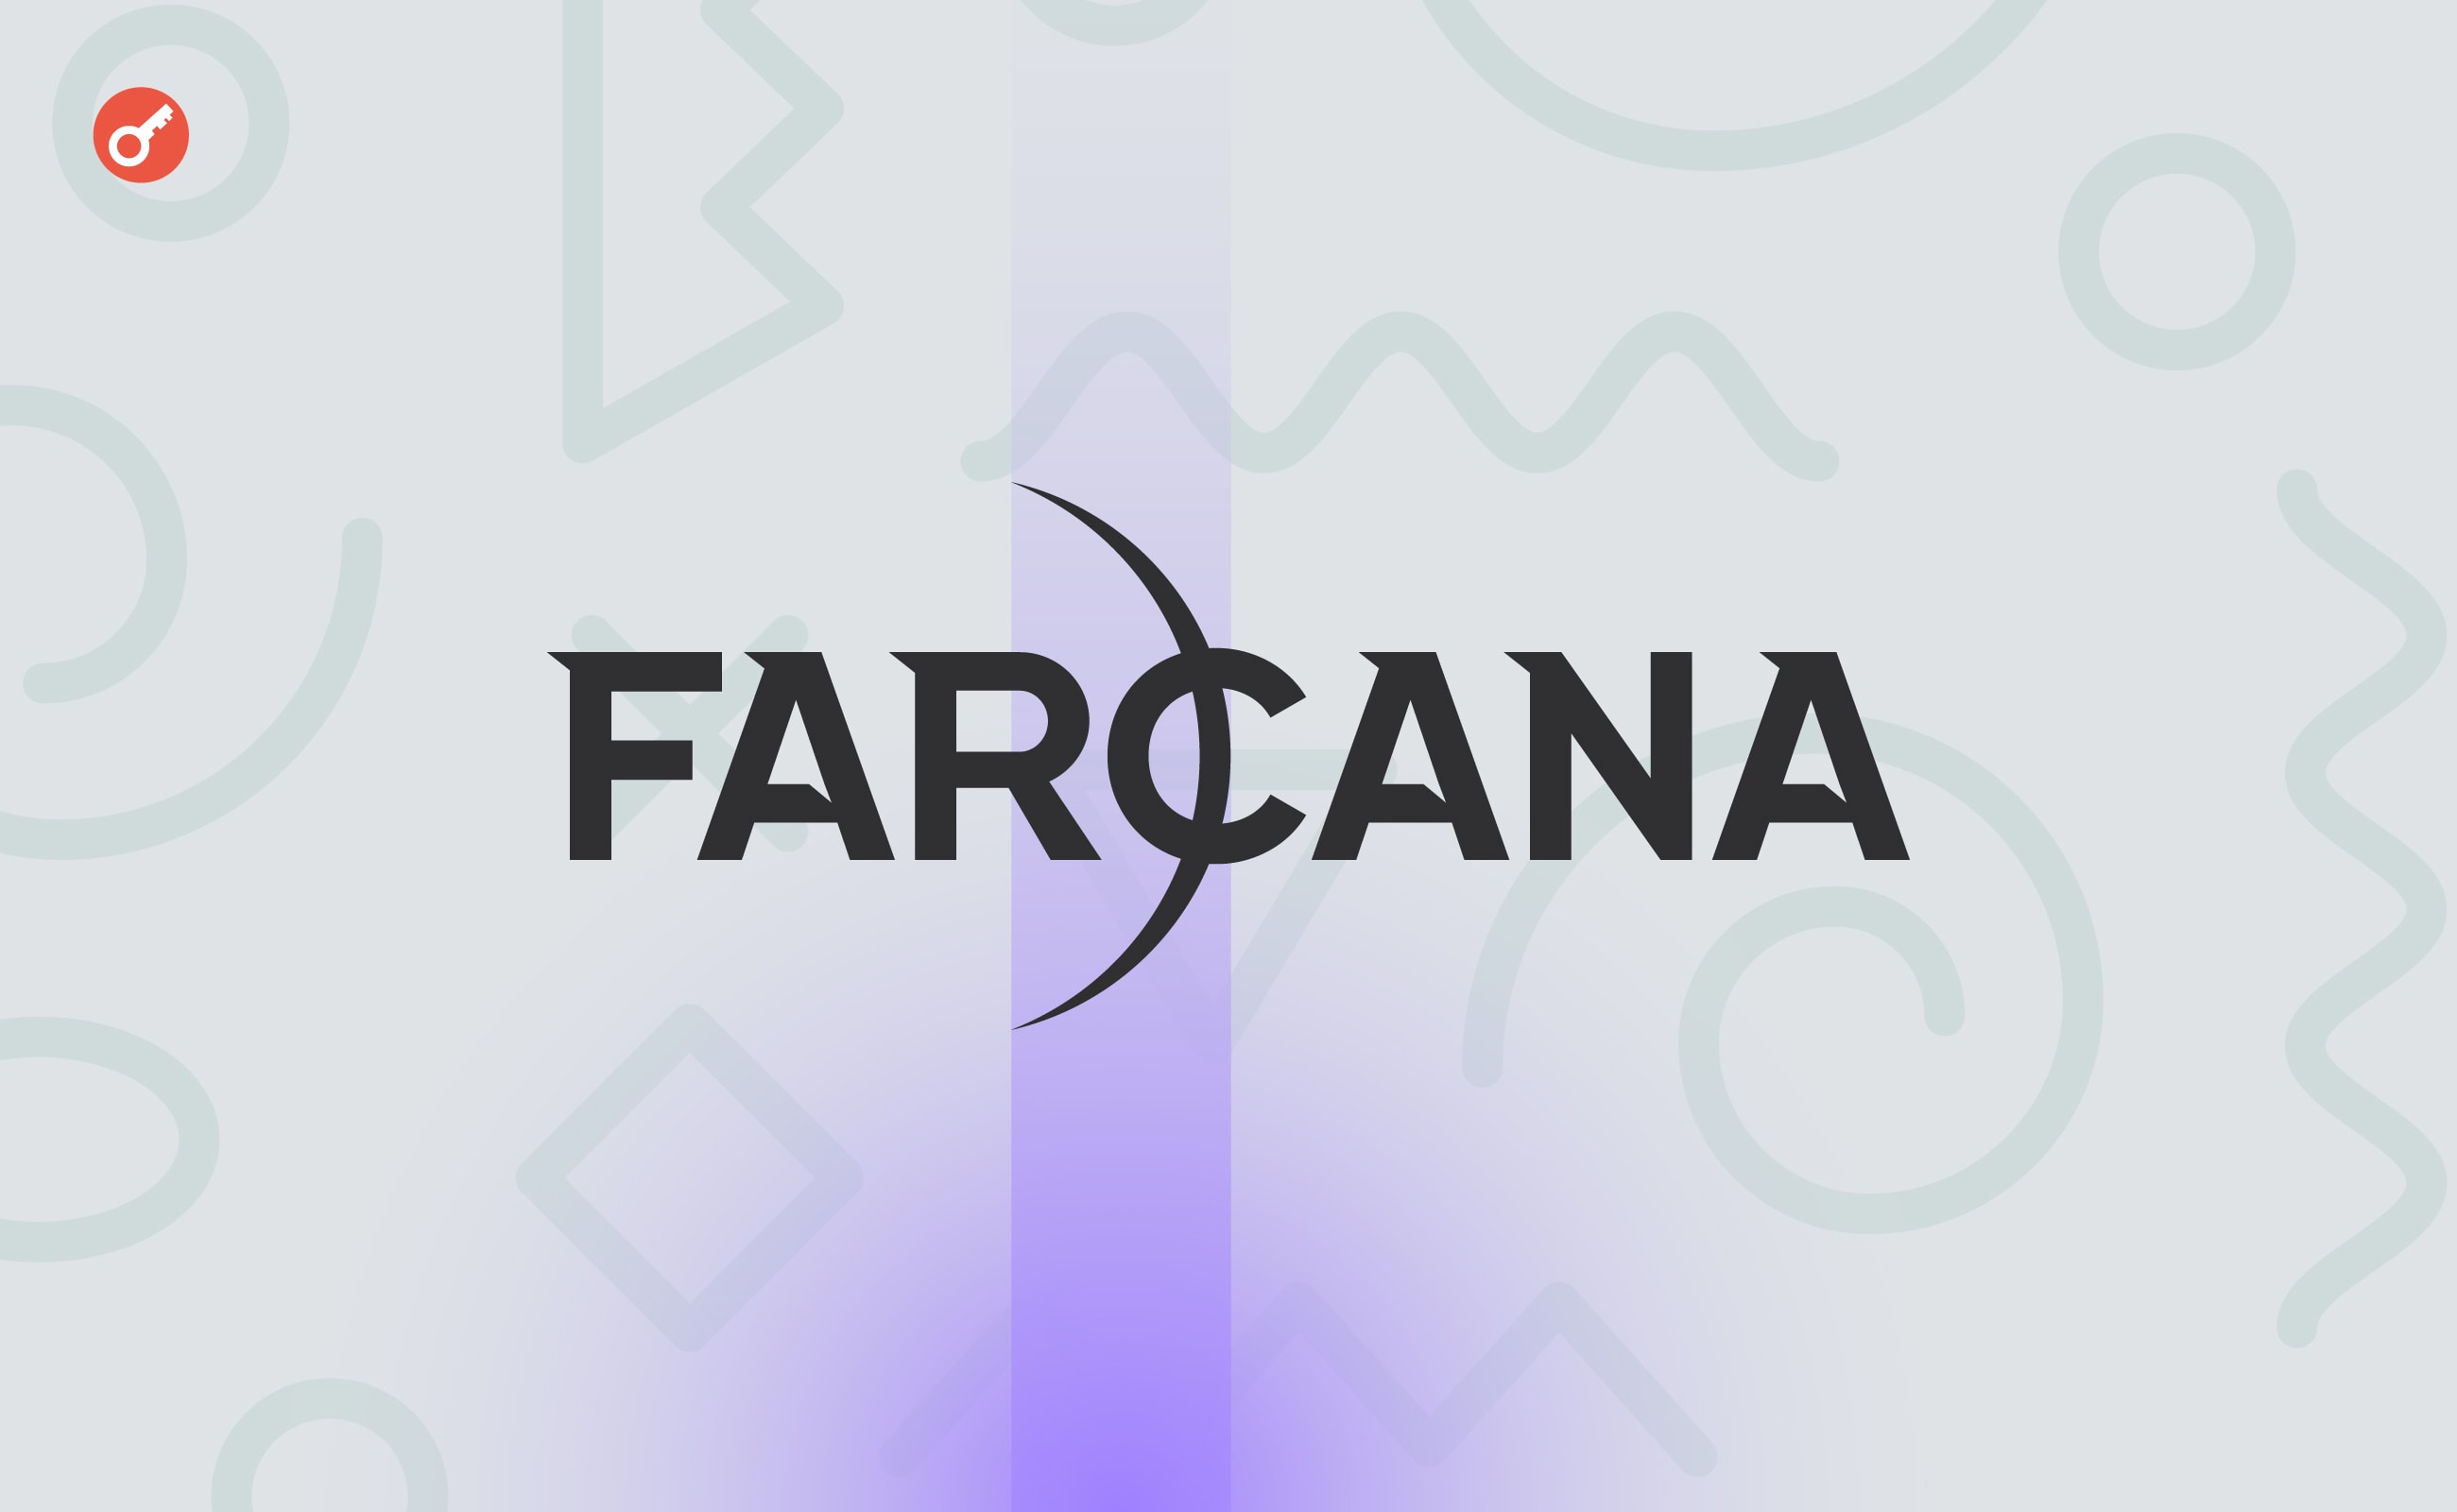 Игровой проект Farcana c биткоин-наградами привлек $10 млн инвестиций. Заглавный коллаж новости.